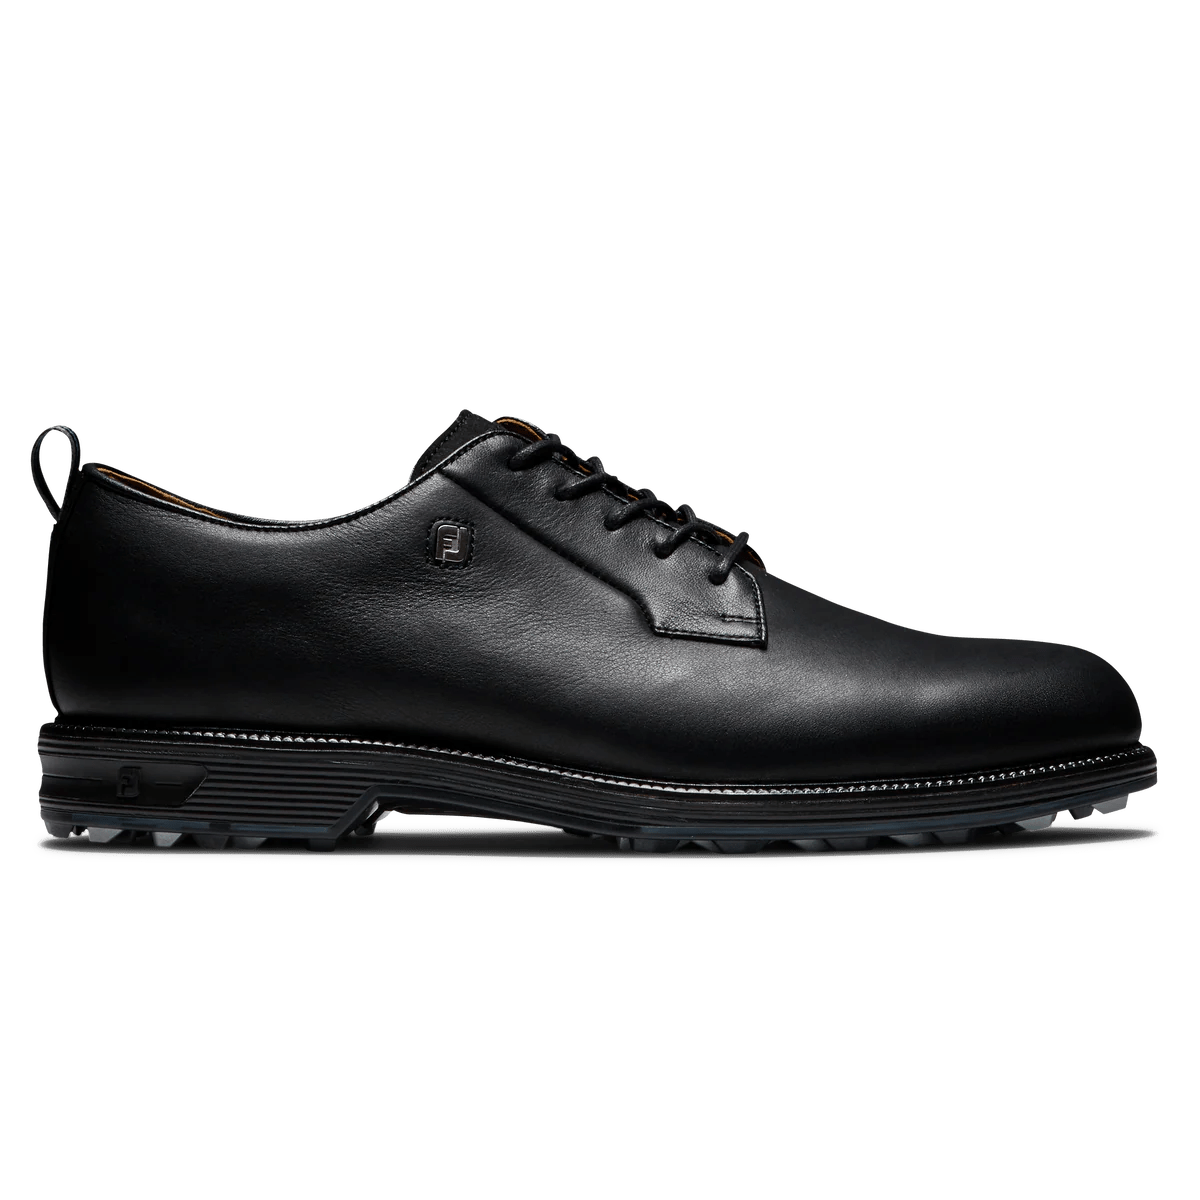 FootJoy Premiere Spikeless Men's Golf Shoe